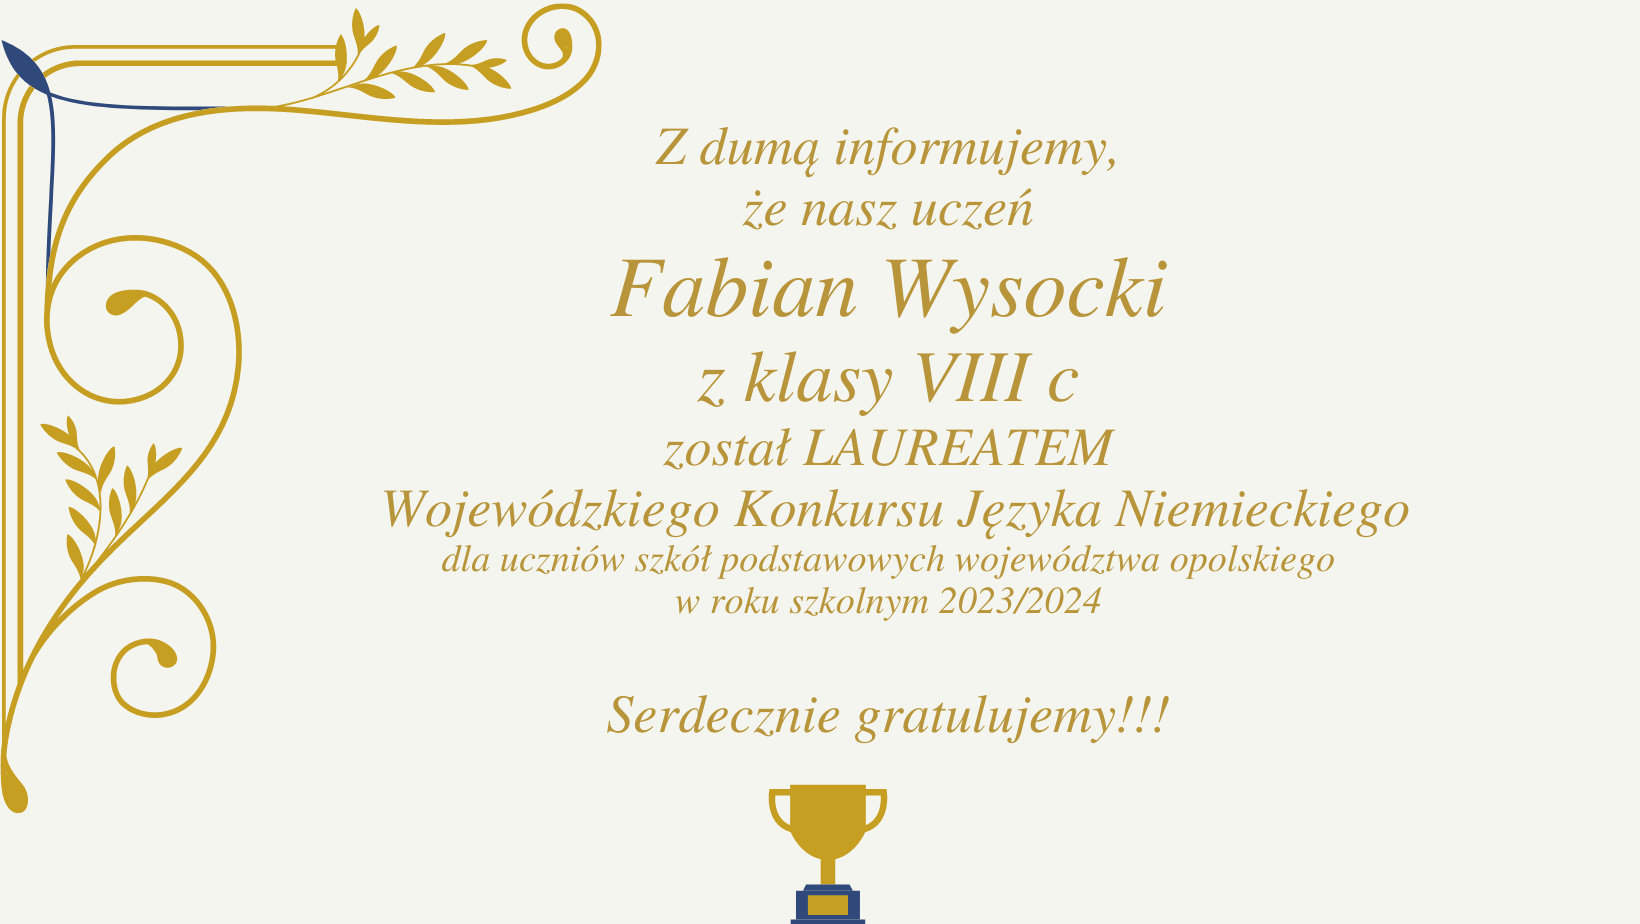 Laureat Fabian Wysocki - Konkurs Języka Niemieckiego